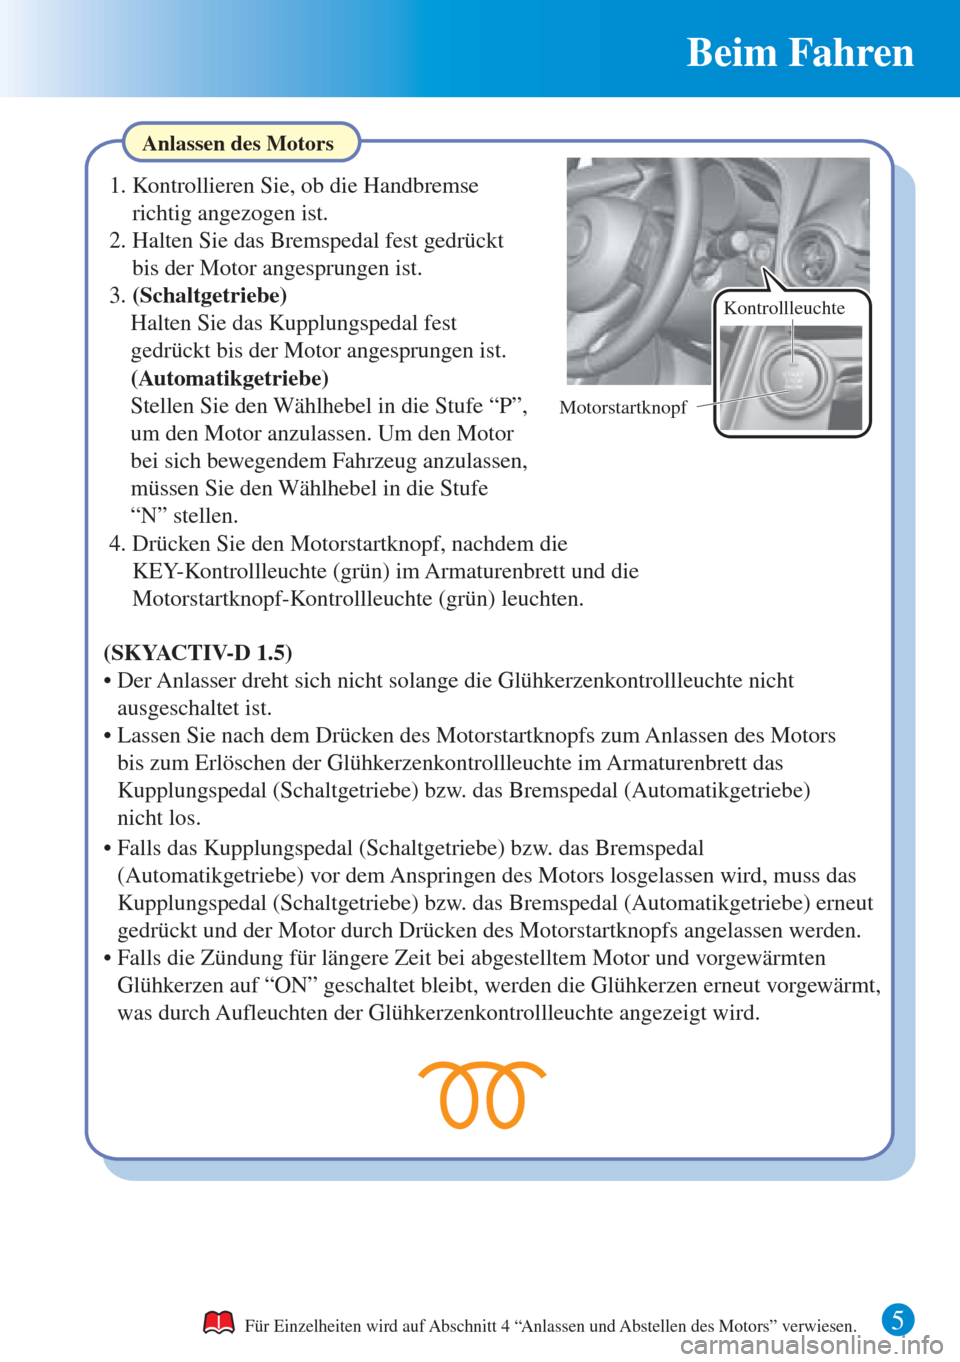 MAZDA MODEL CX-3 2016  Kurzanleitung (in German) Beim Fahren
5 
Anlassen des Motors
Für Einzelheiten wird auf Abschnitt 4 “Anlassen und Abstellen des Motors” verwiesen.
1. Kontrollieren Sie, ob die Handbremse 
richtig angezogen ist.
2. Halten S